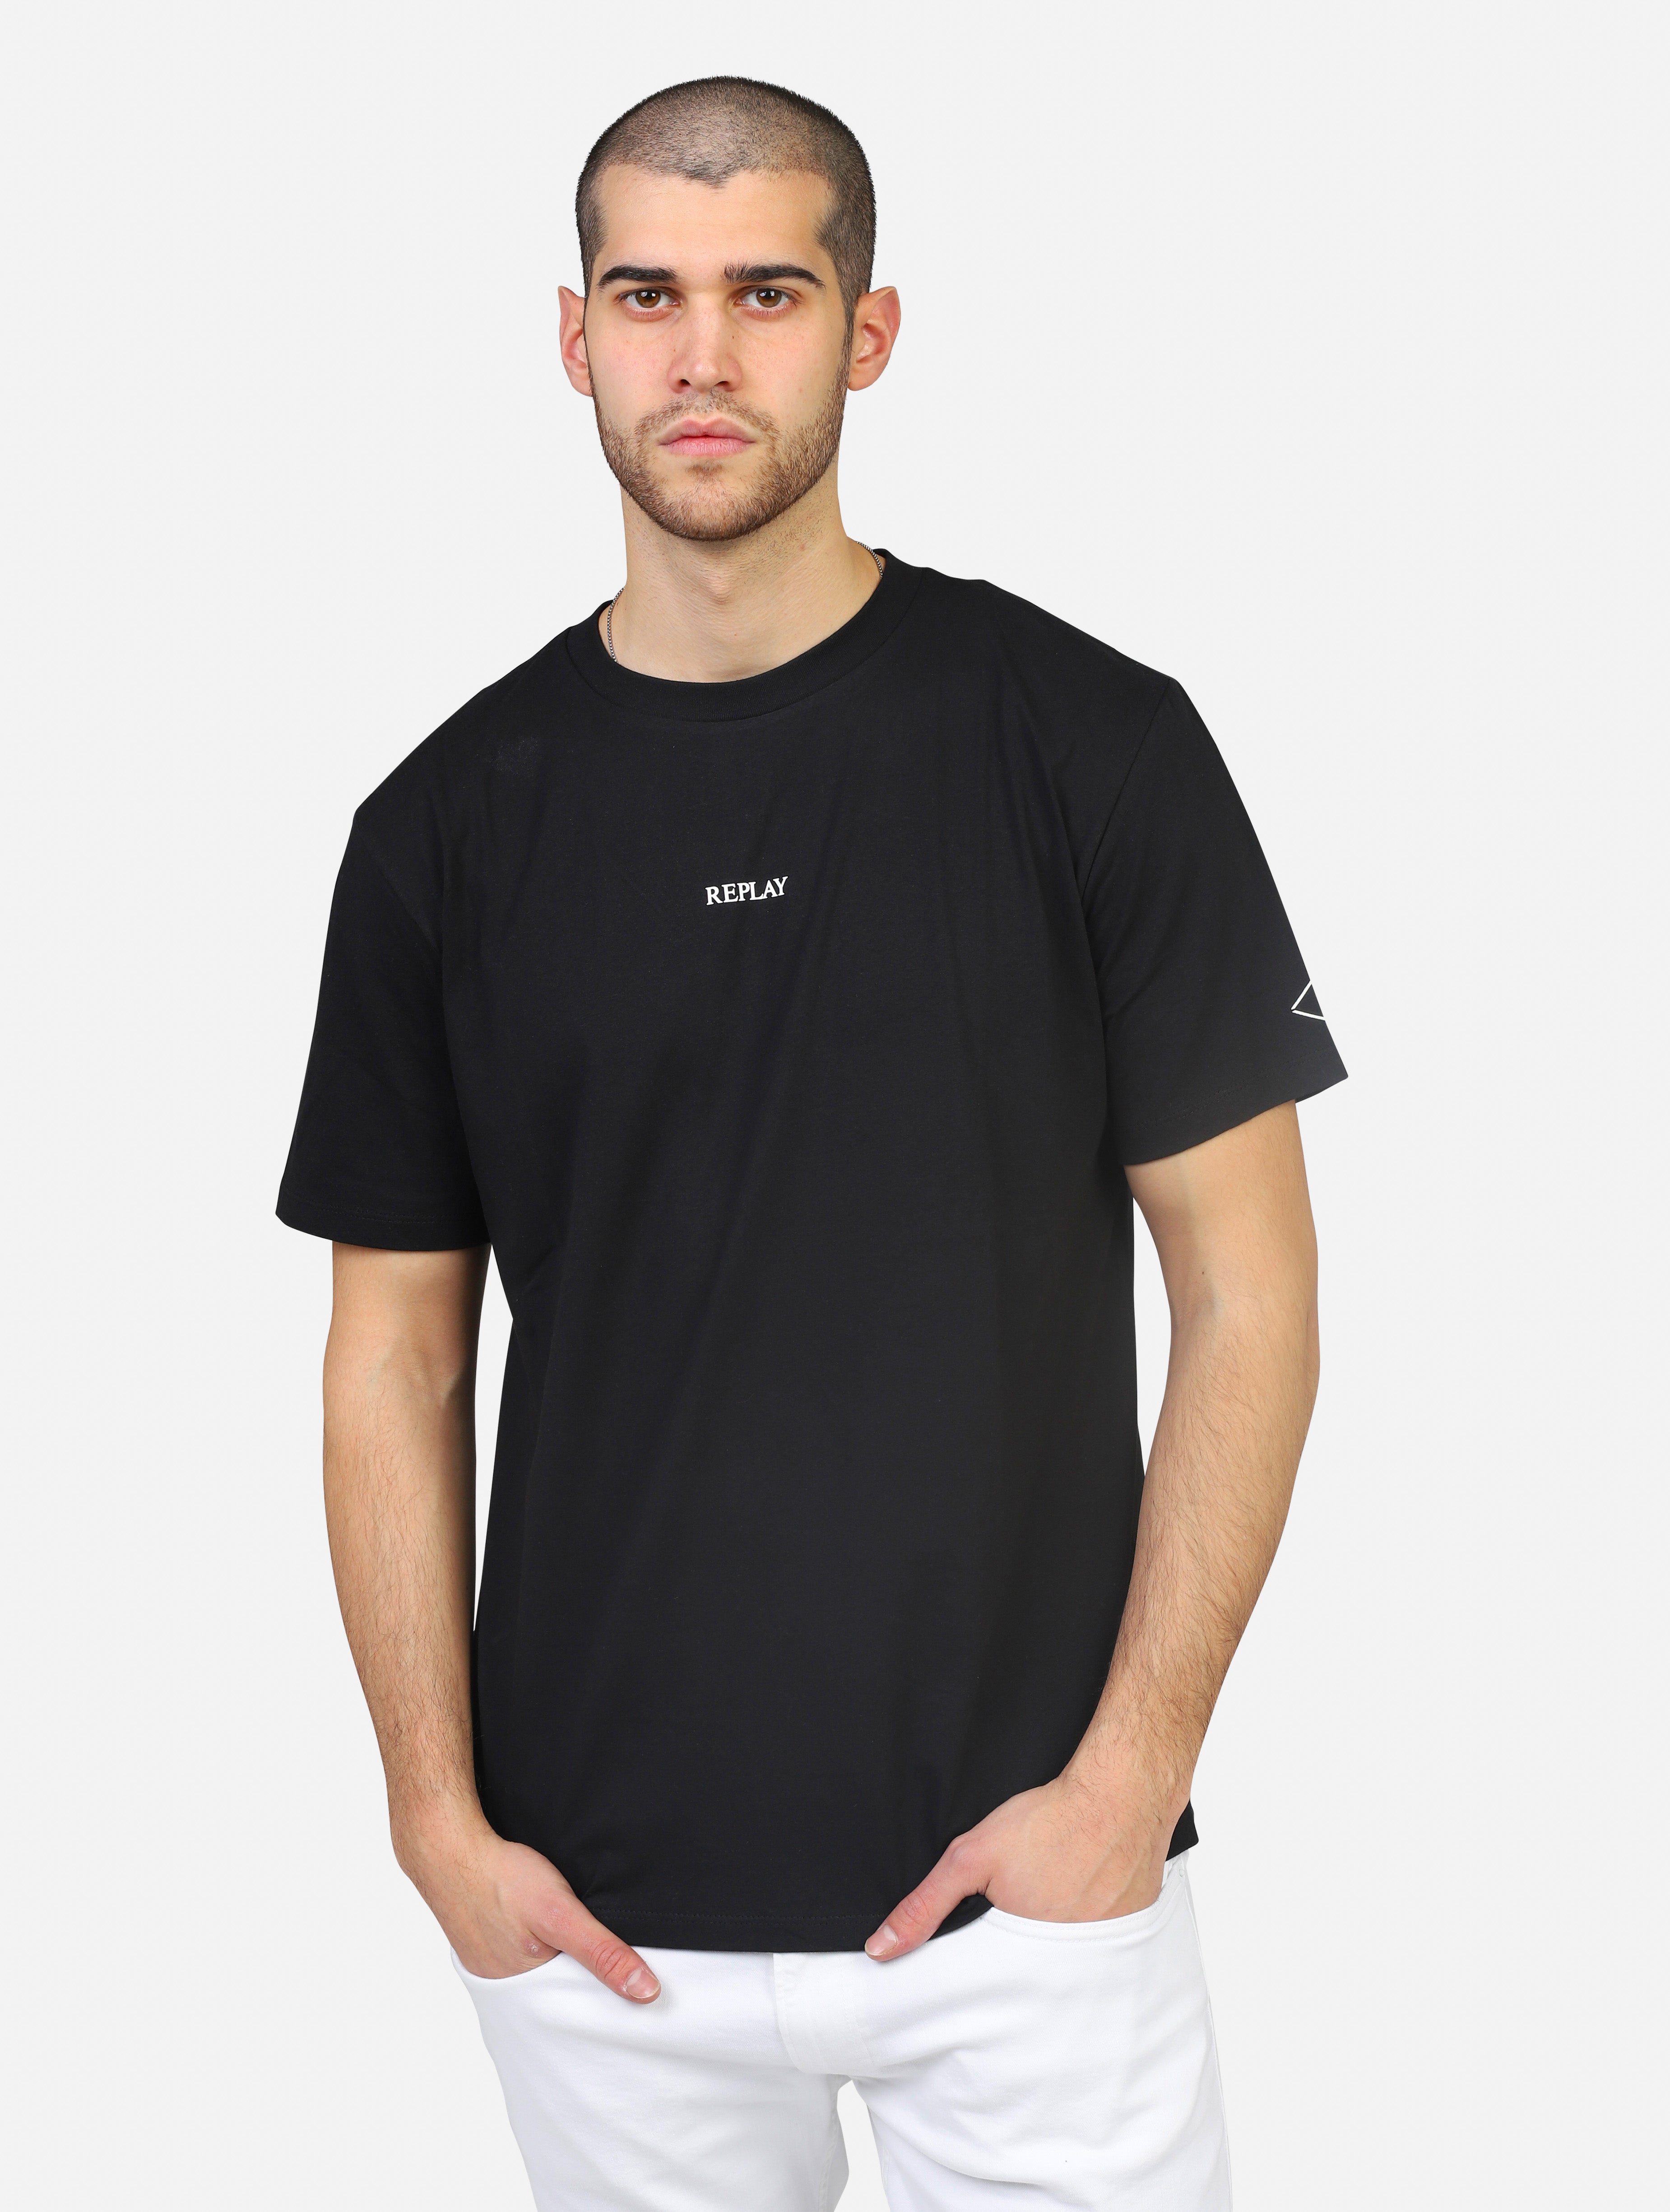 T-shirt replay  nero uomo 